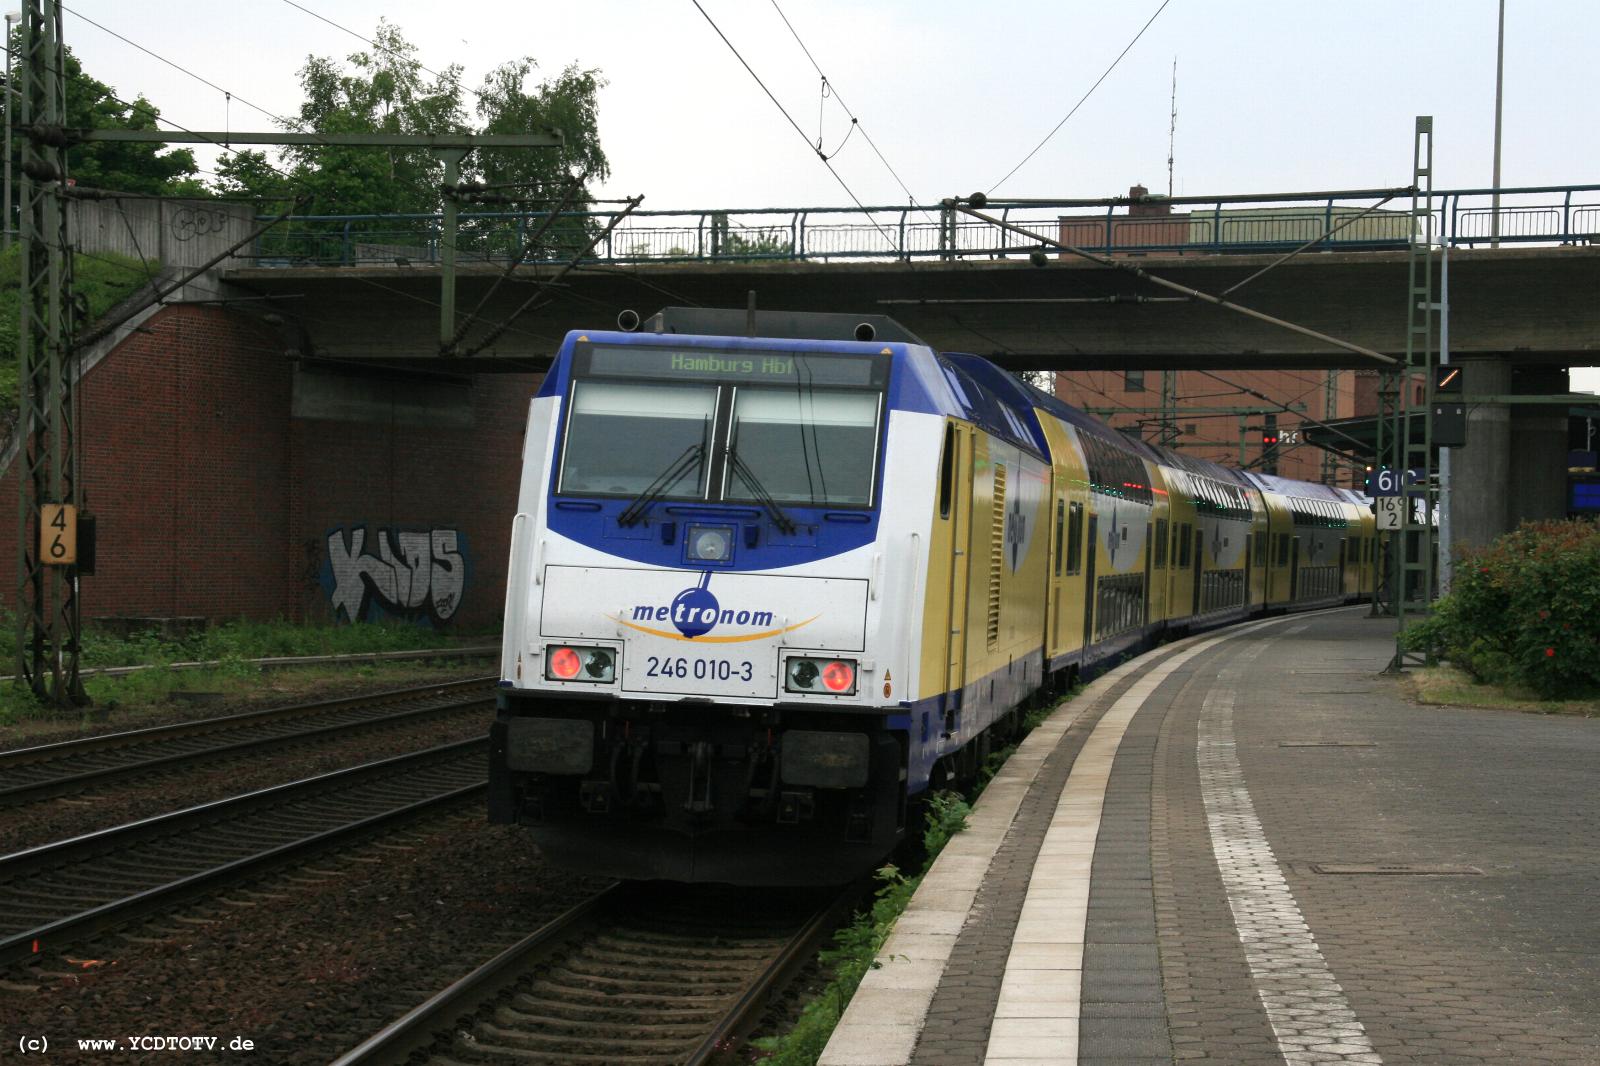  Bahnhof Hamburg-Harburg, 18.05.2011, 14:42 246 010-3 Richtung Sden 